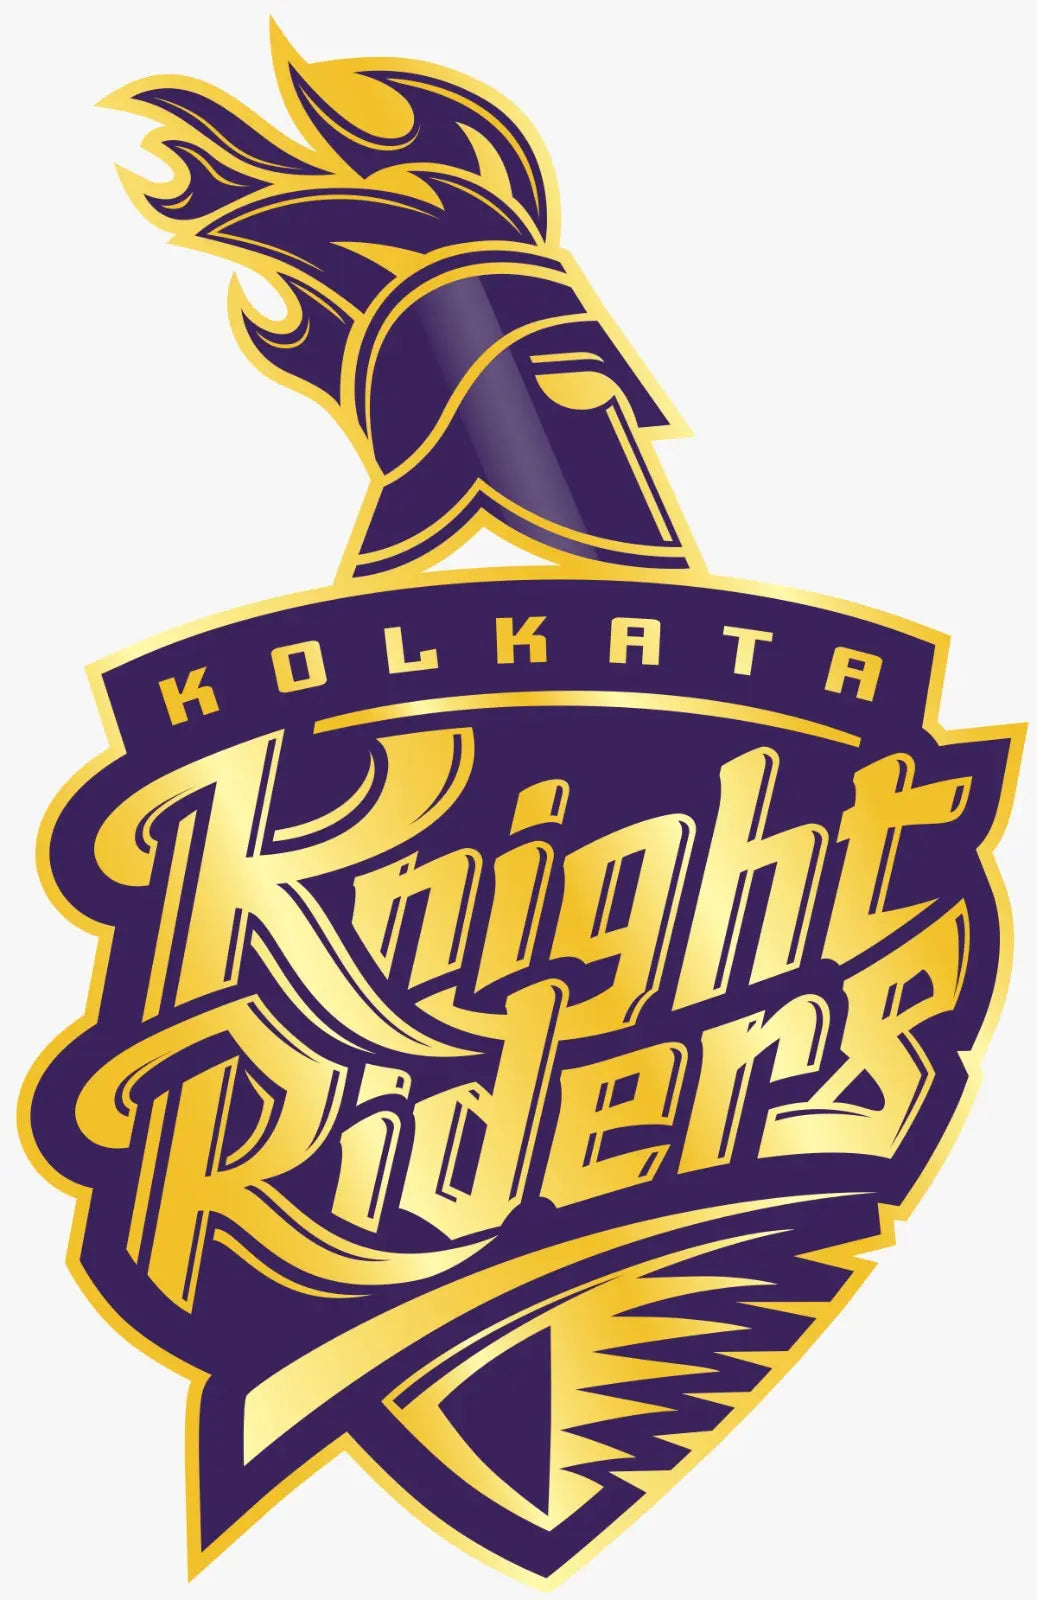 The Kolkata Knight Riders (KKR) logo